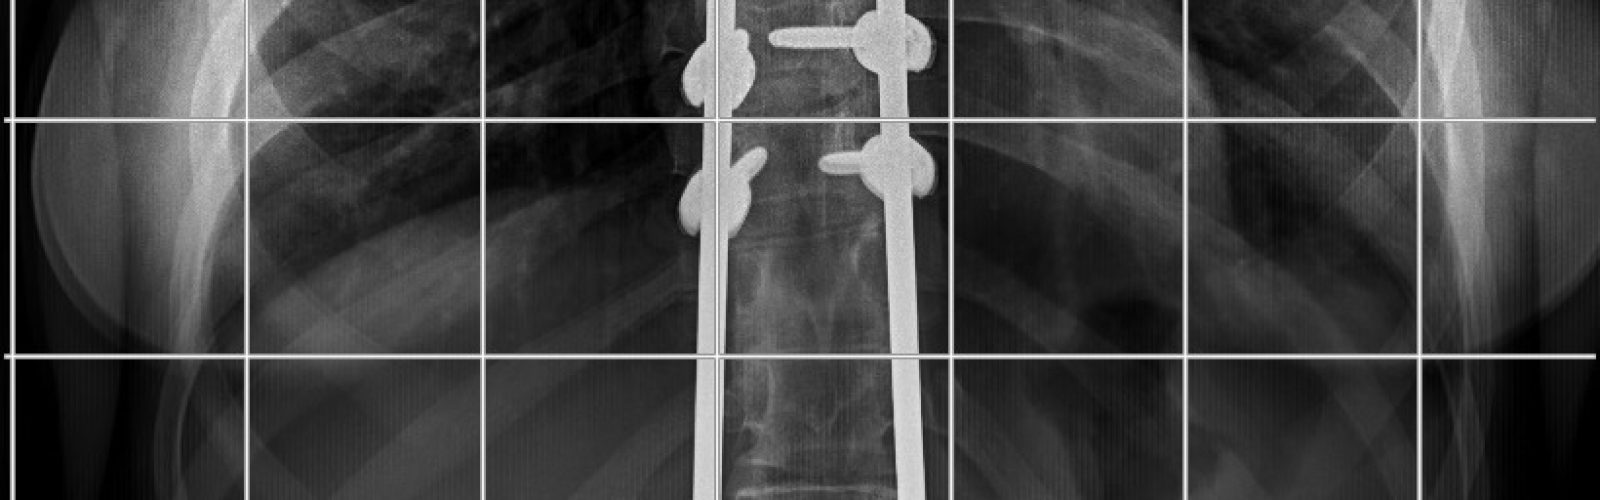 radiografía columna vertebral